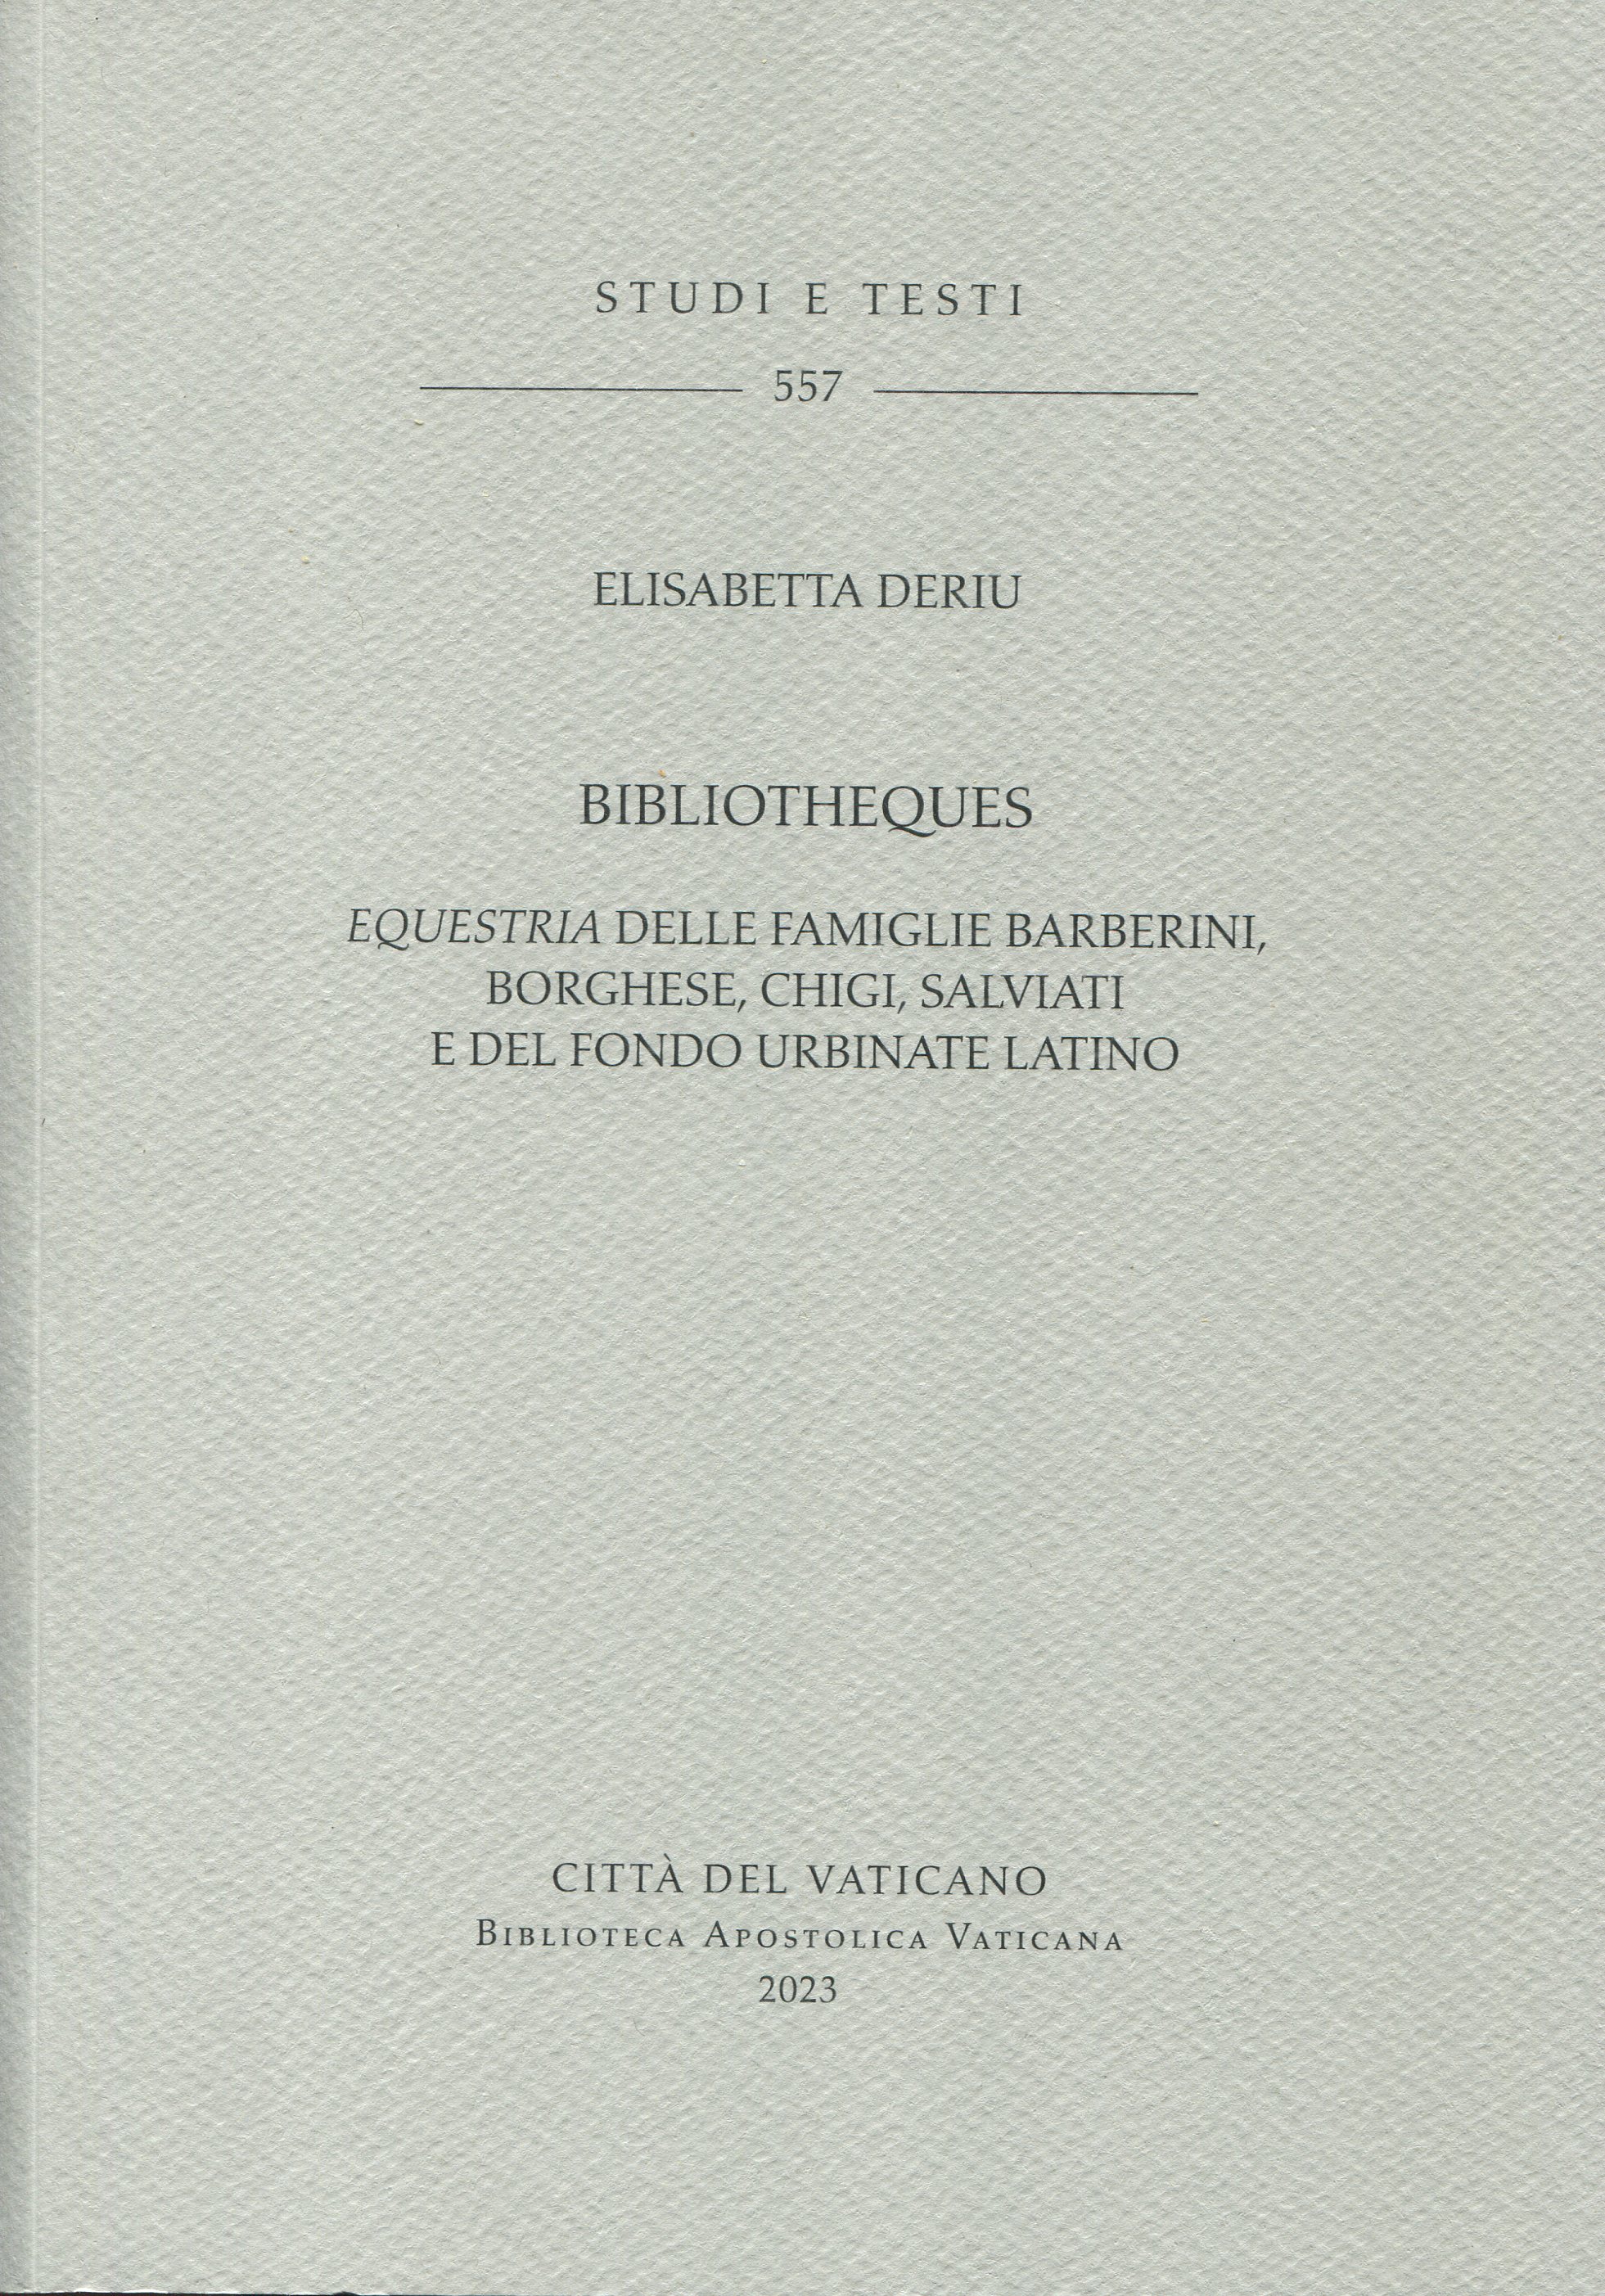 BibliothEques. Equestria delle famiglie Barberini, Borghese, Chigi, Salviati e del fondo Urbinate Latino.